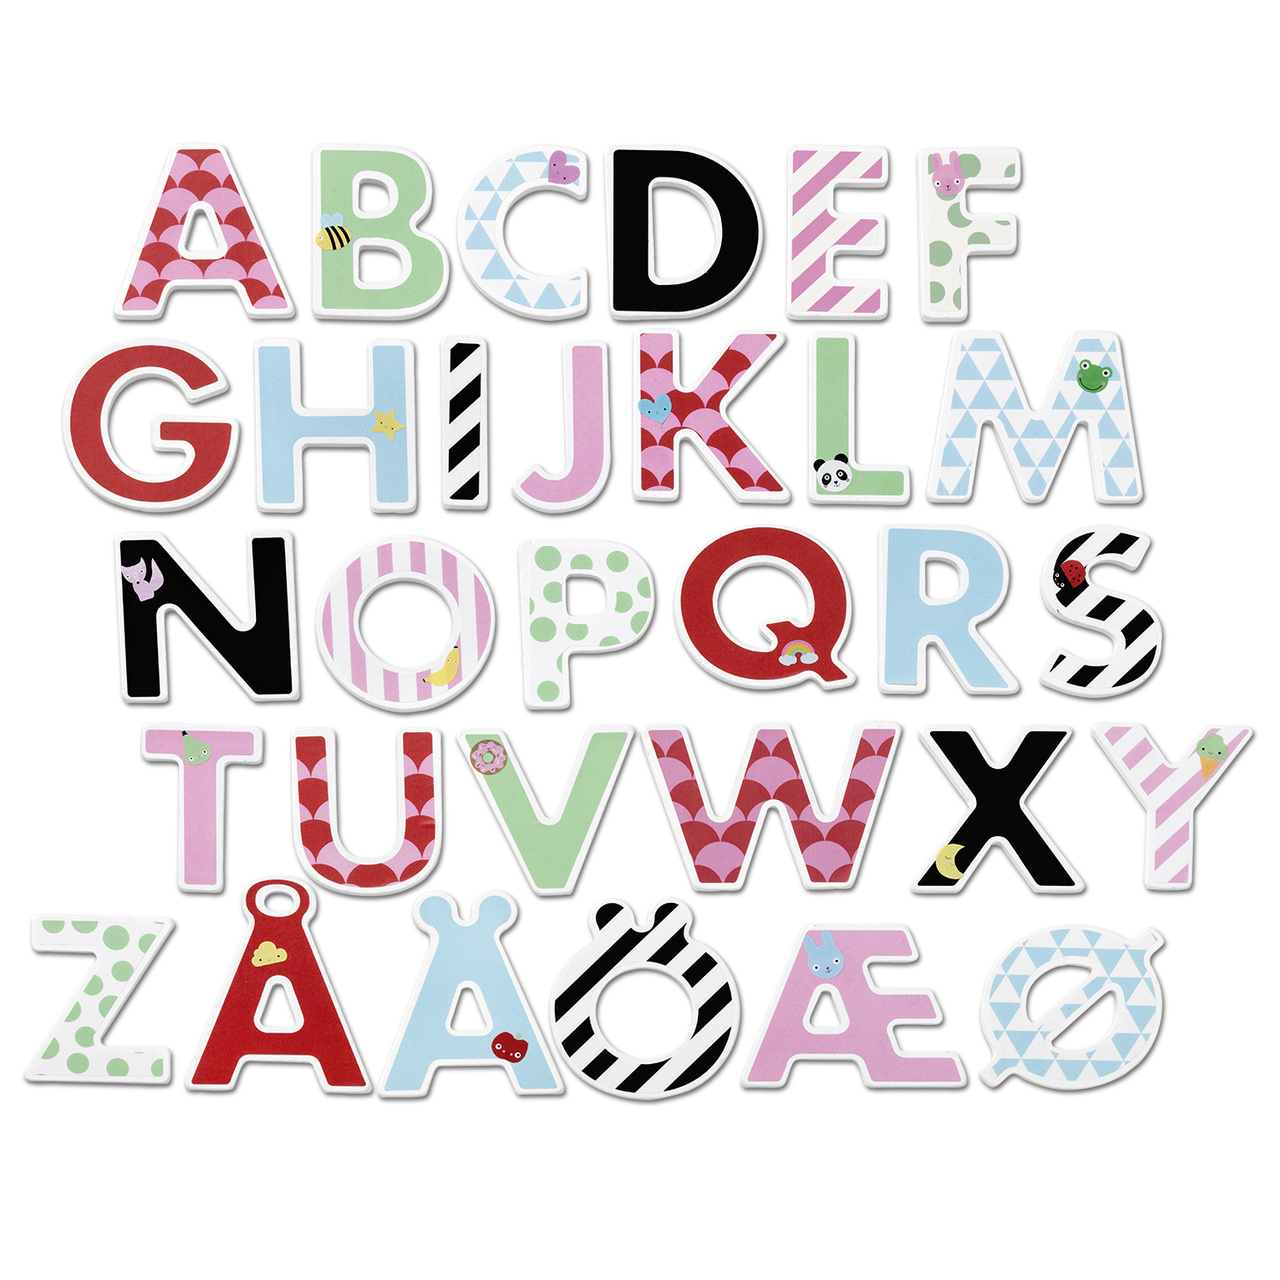 Buchstaben & Ziffern micki r – buchstabe & sticker mit verschiedenen mustern